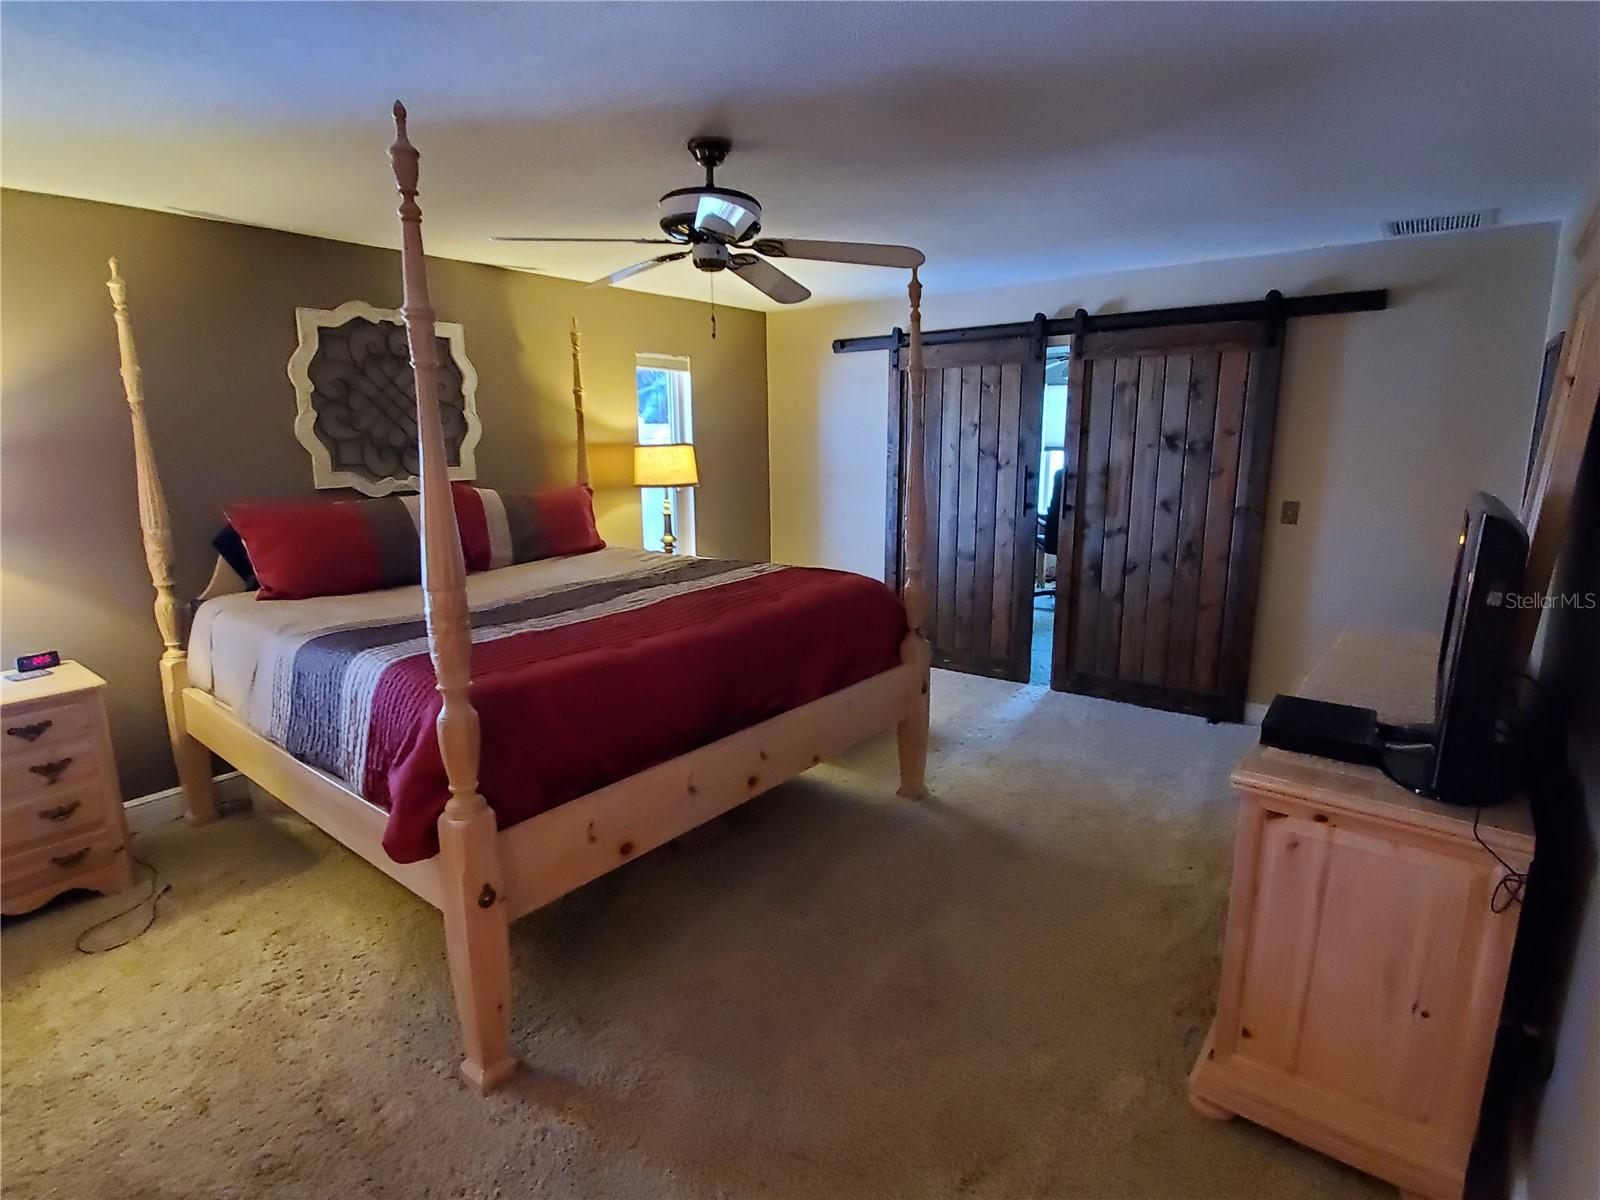 Master Bedroom with Barn Doors